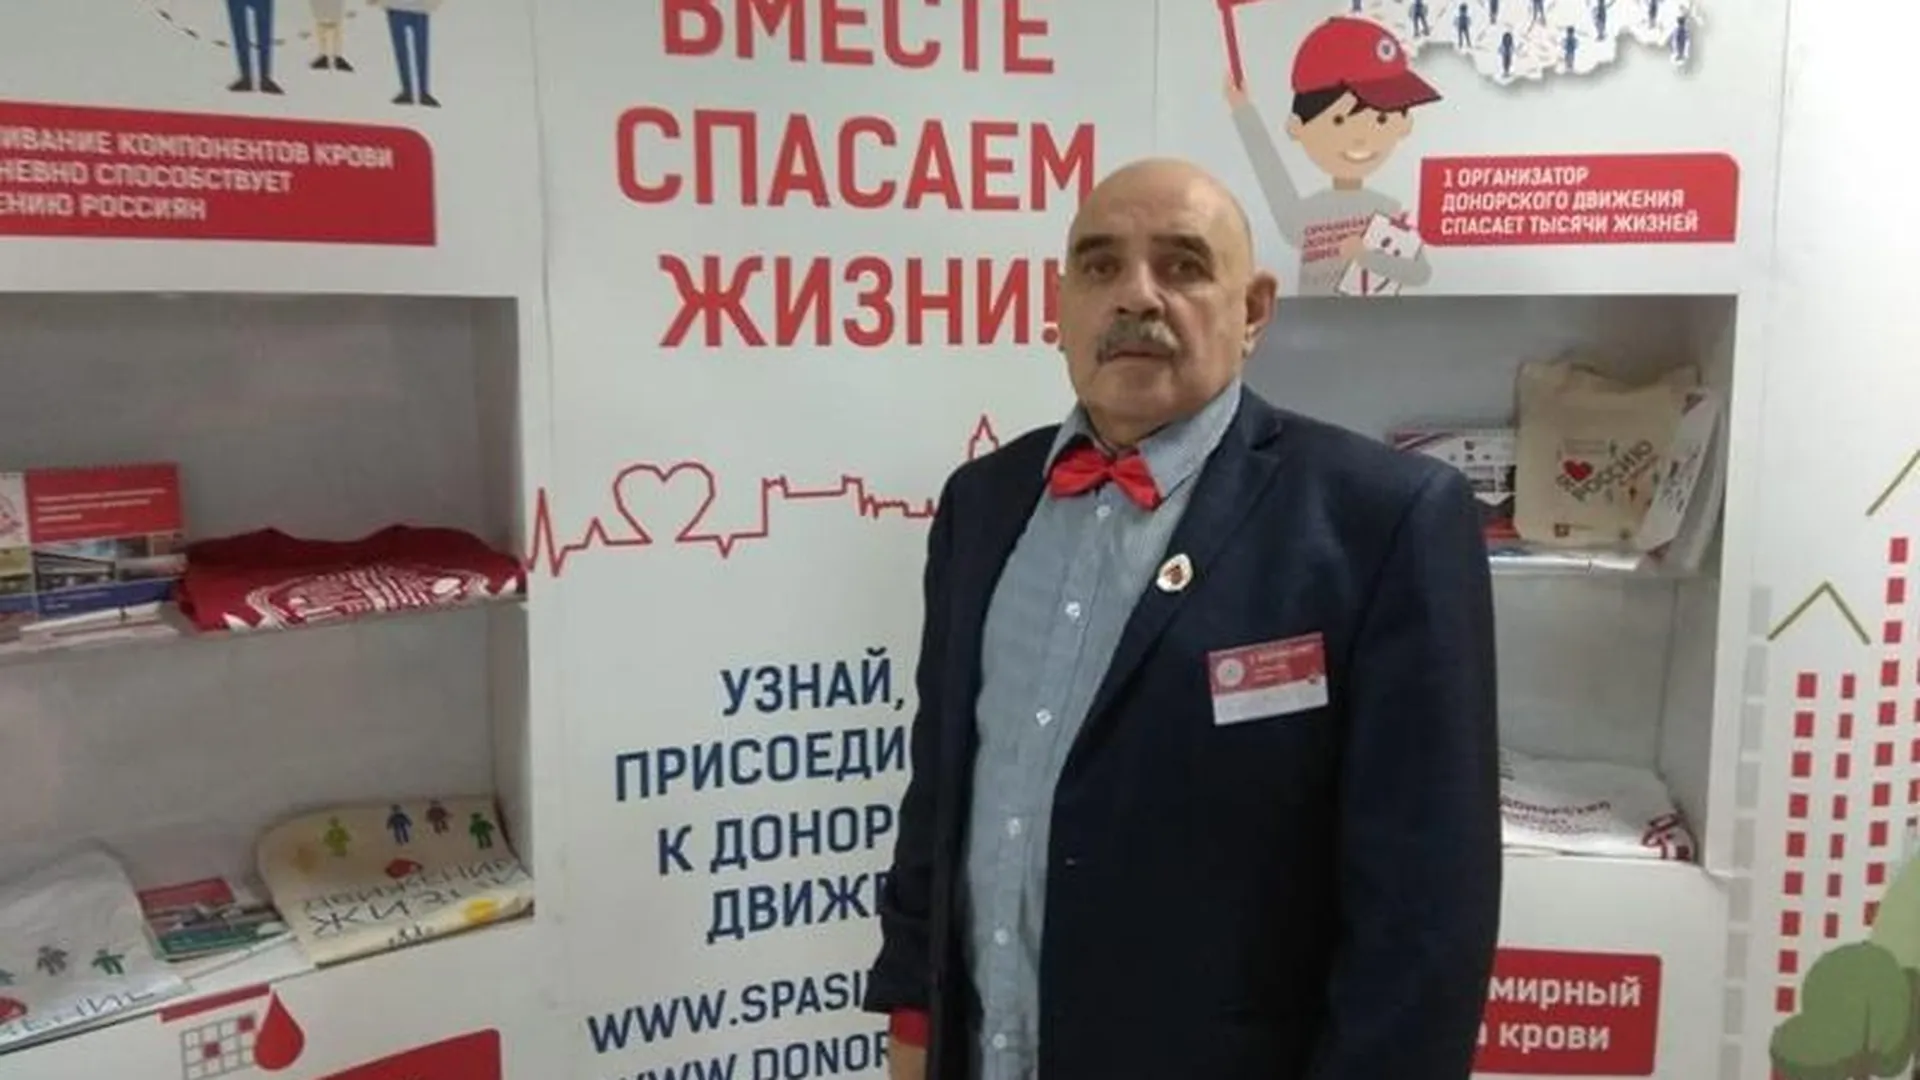 Пенсионер из Сергиева Посада меняет кровь на молодость